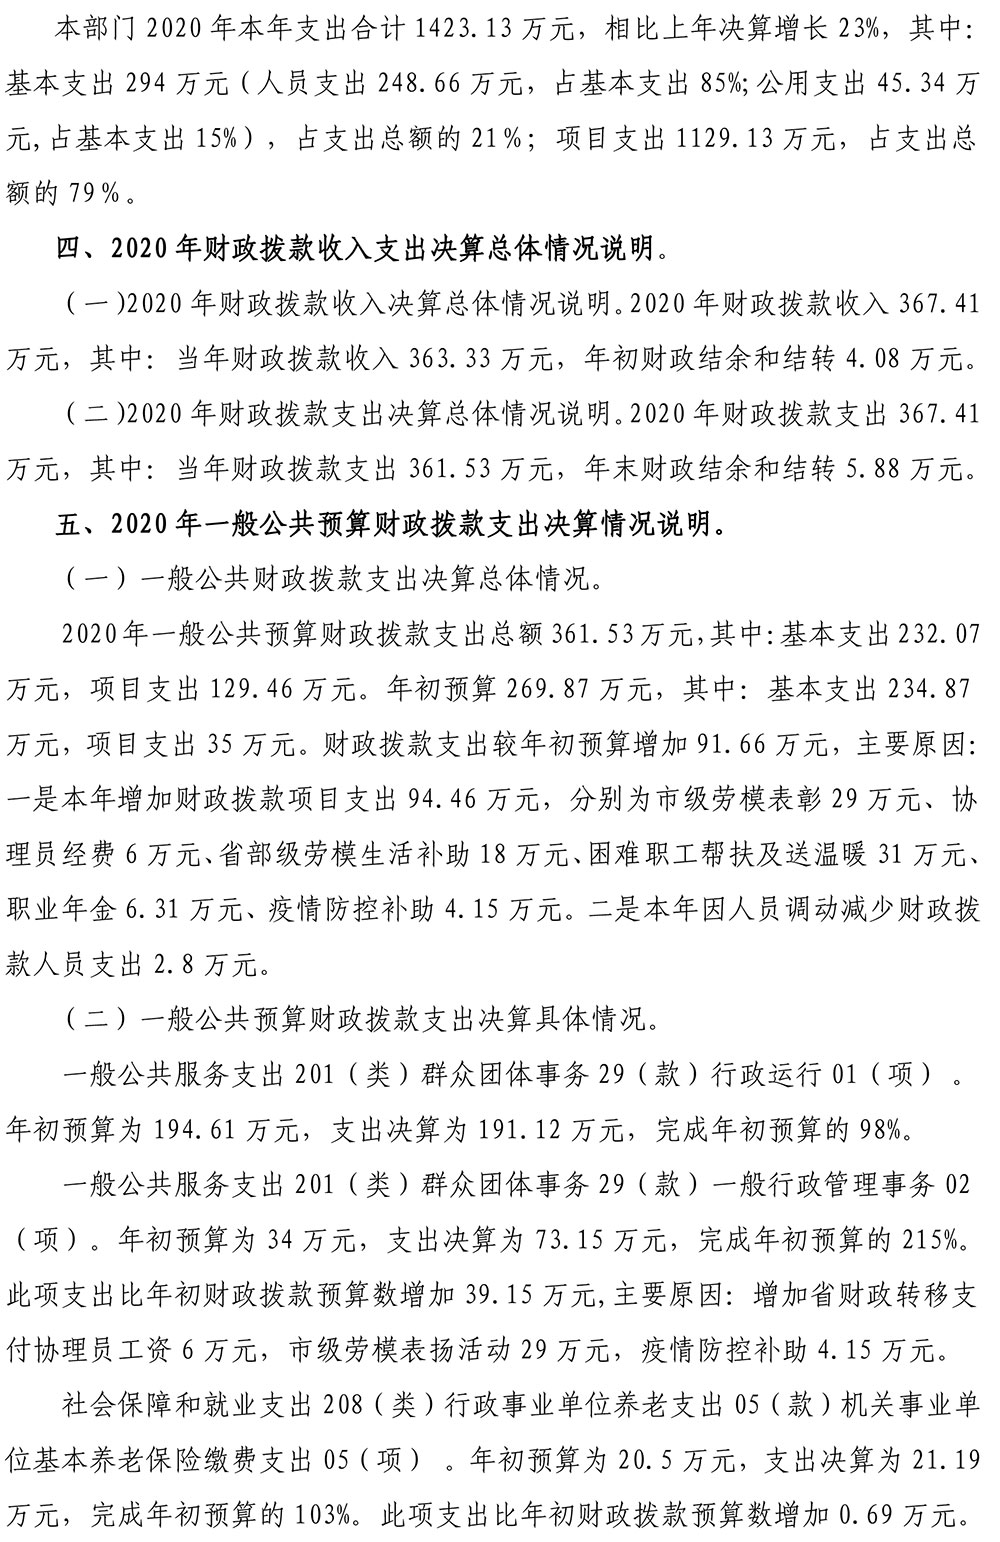 仙桃市总工会2020年部门决算信息公开